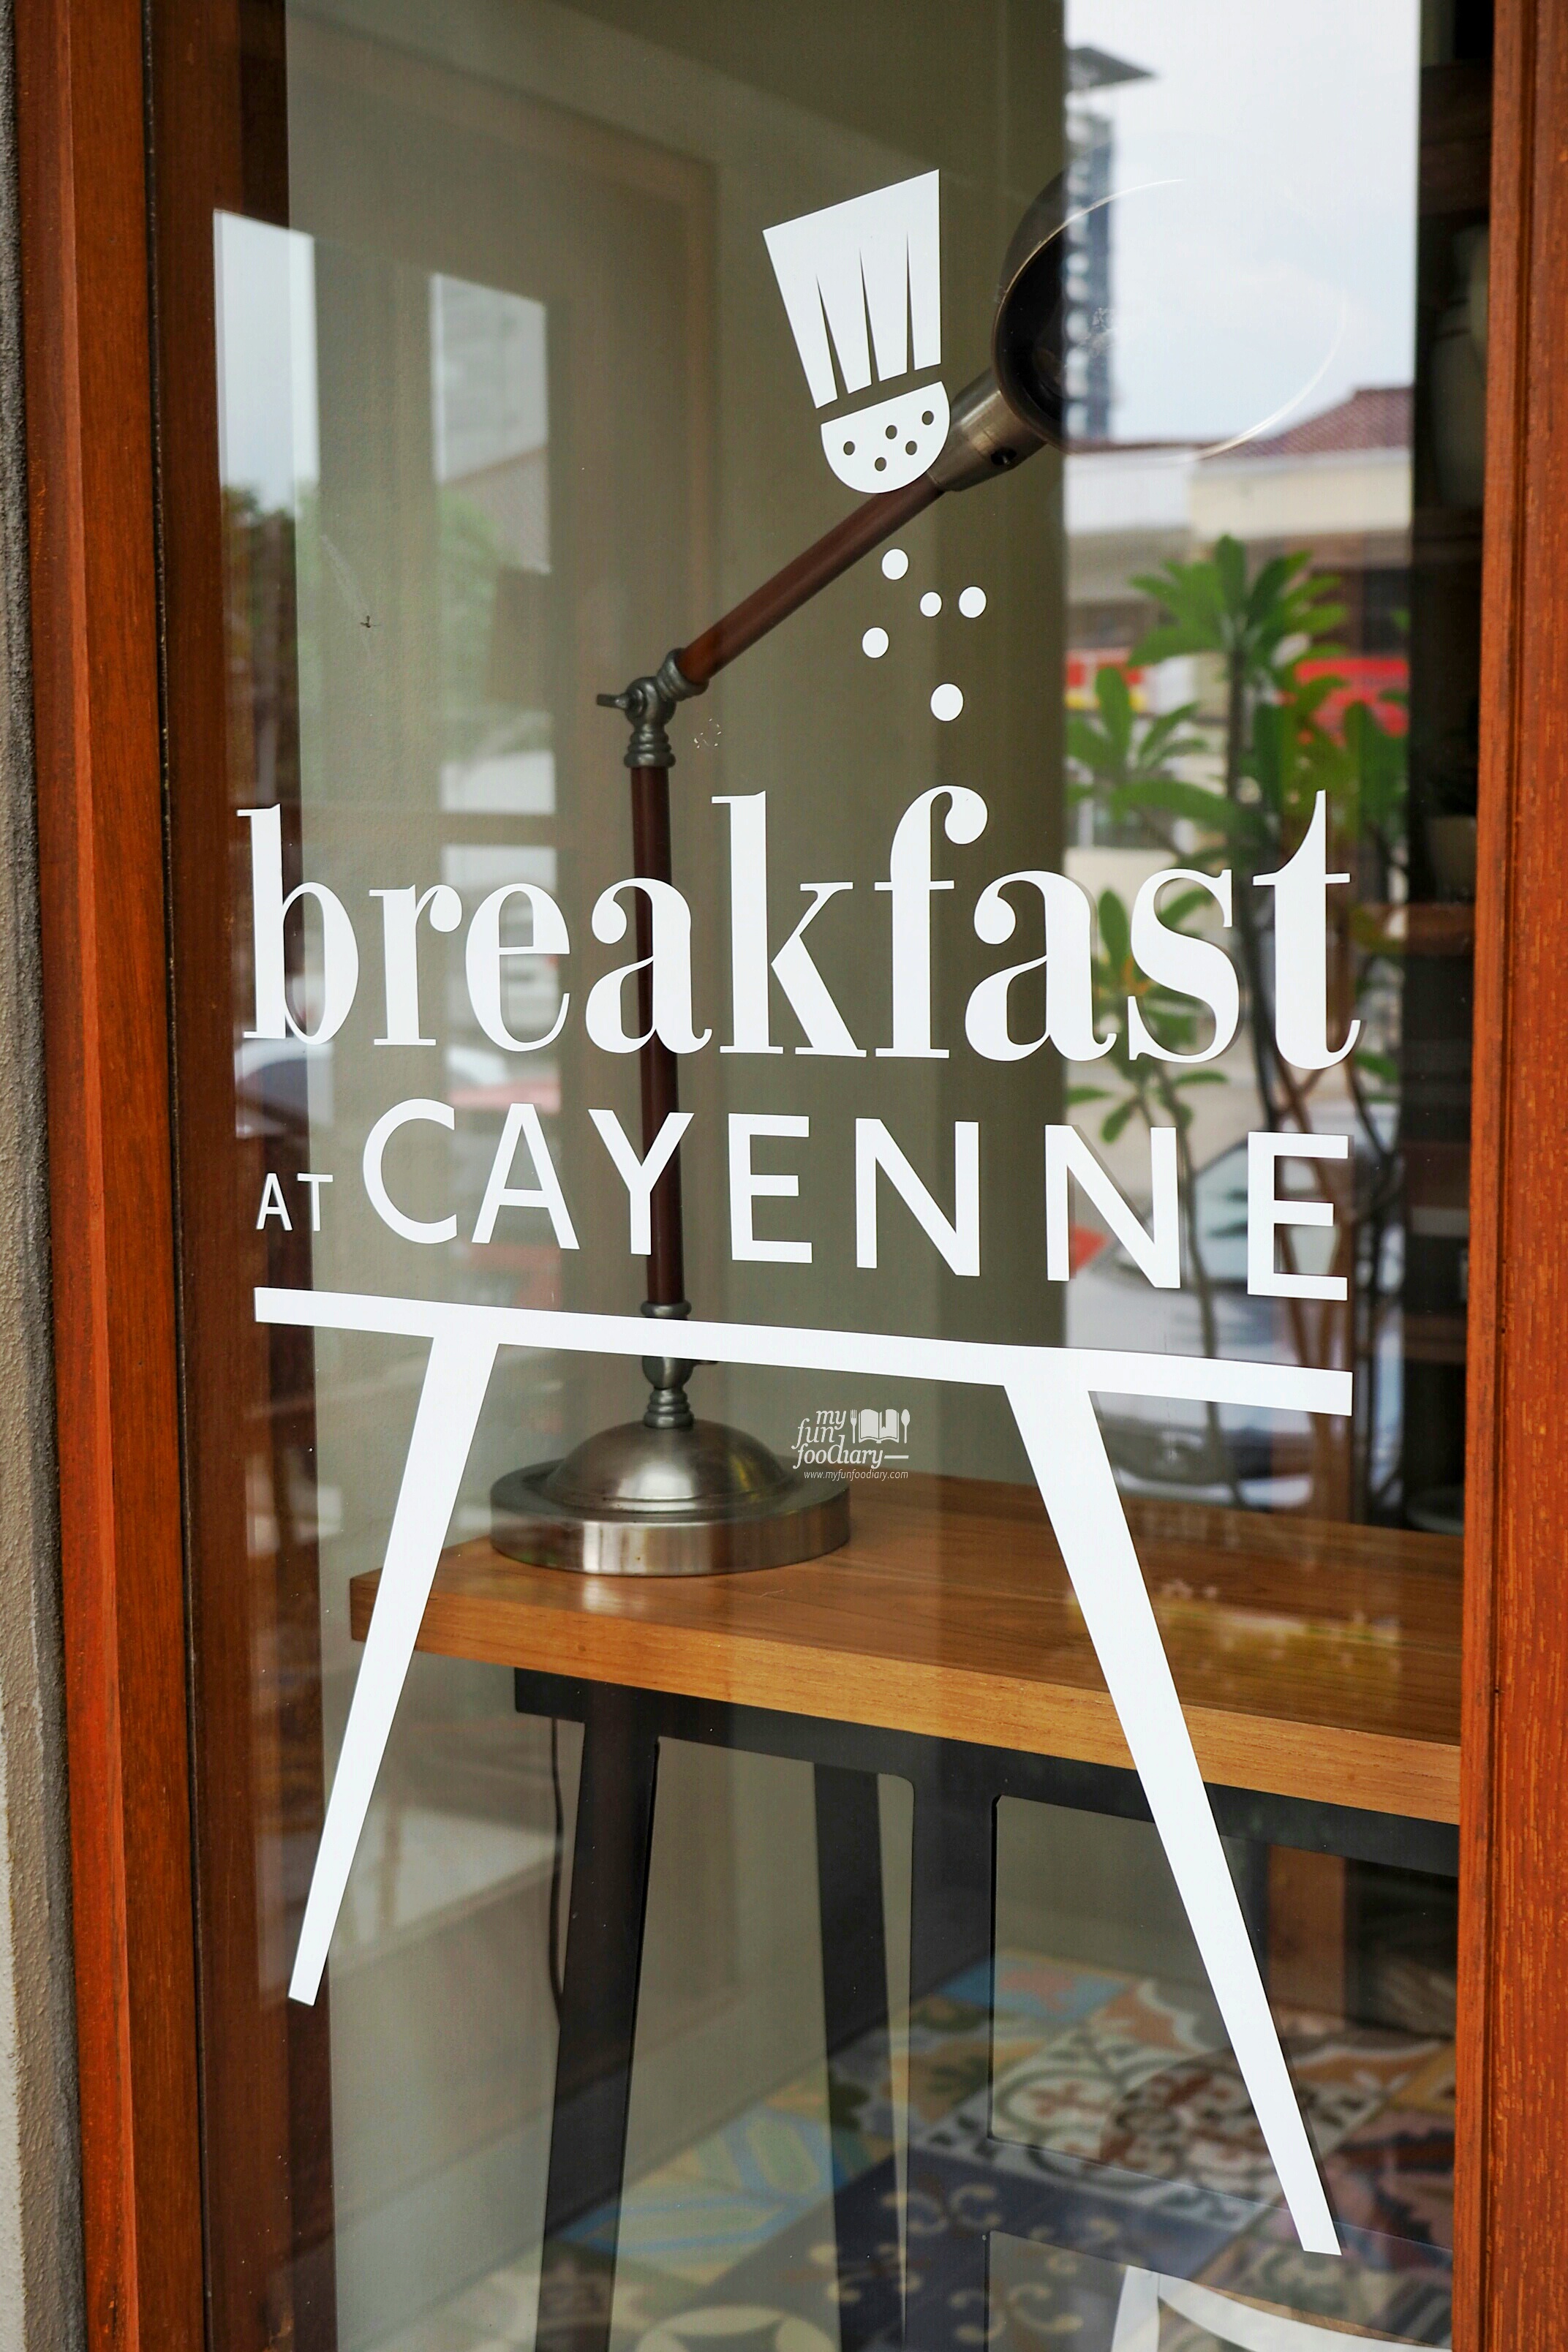 Breakfast at Cayenne by Myfunfoodiary